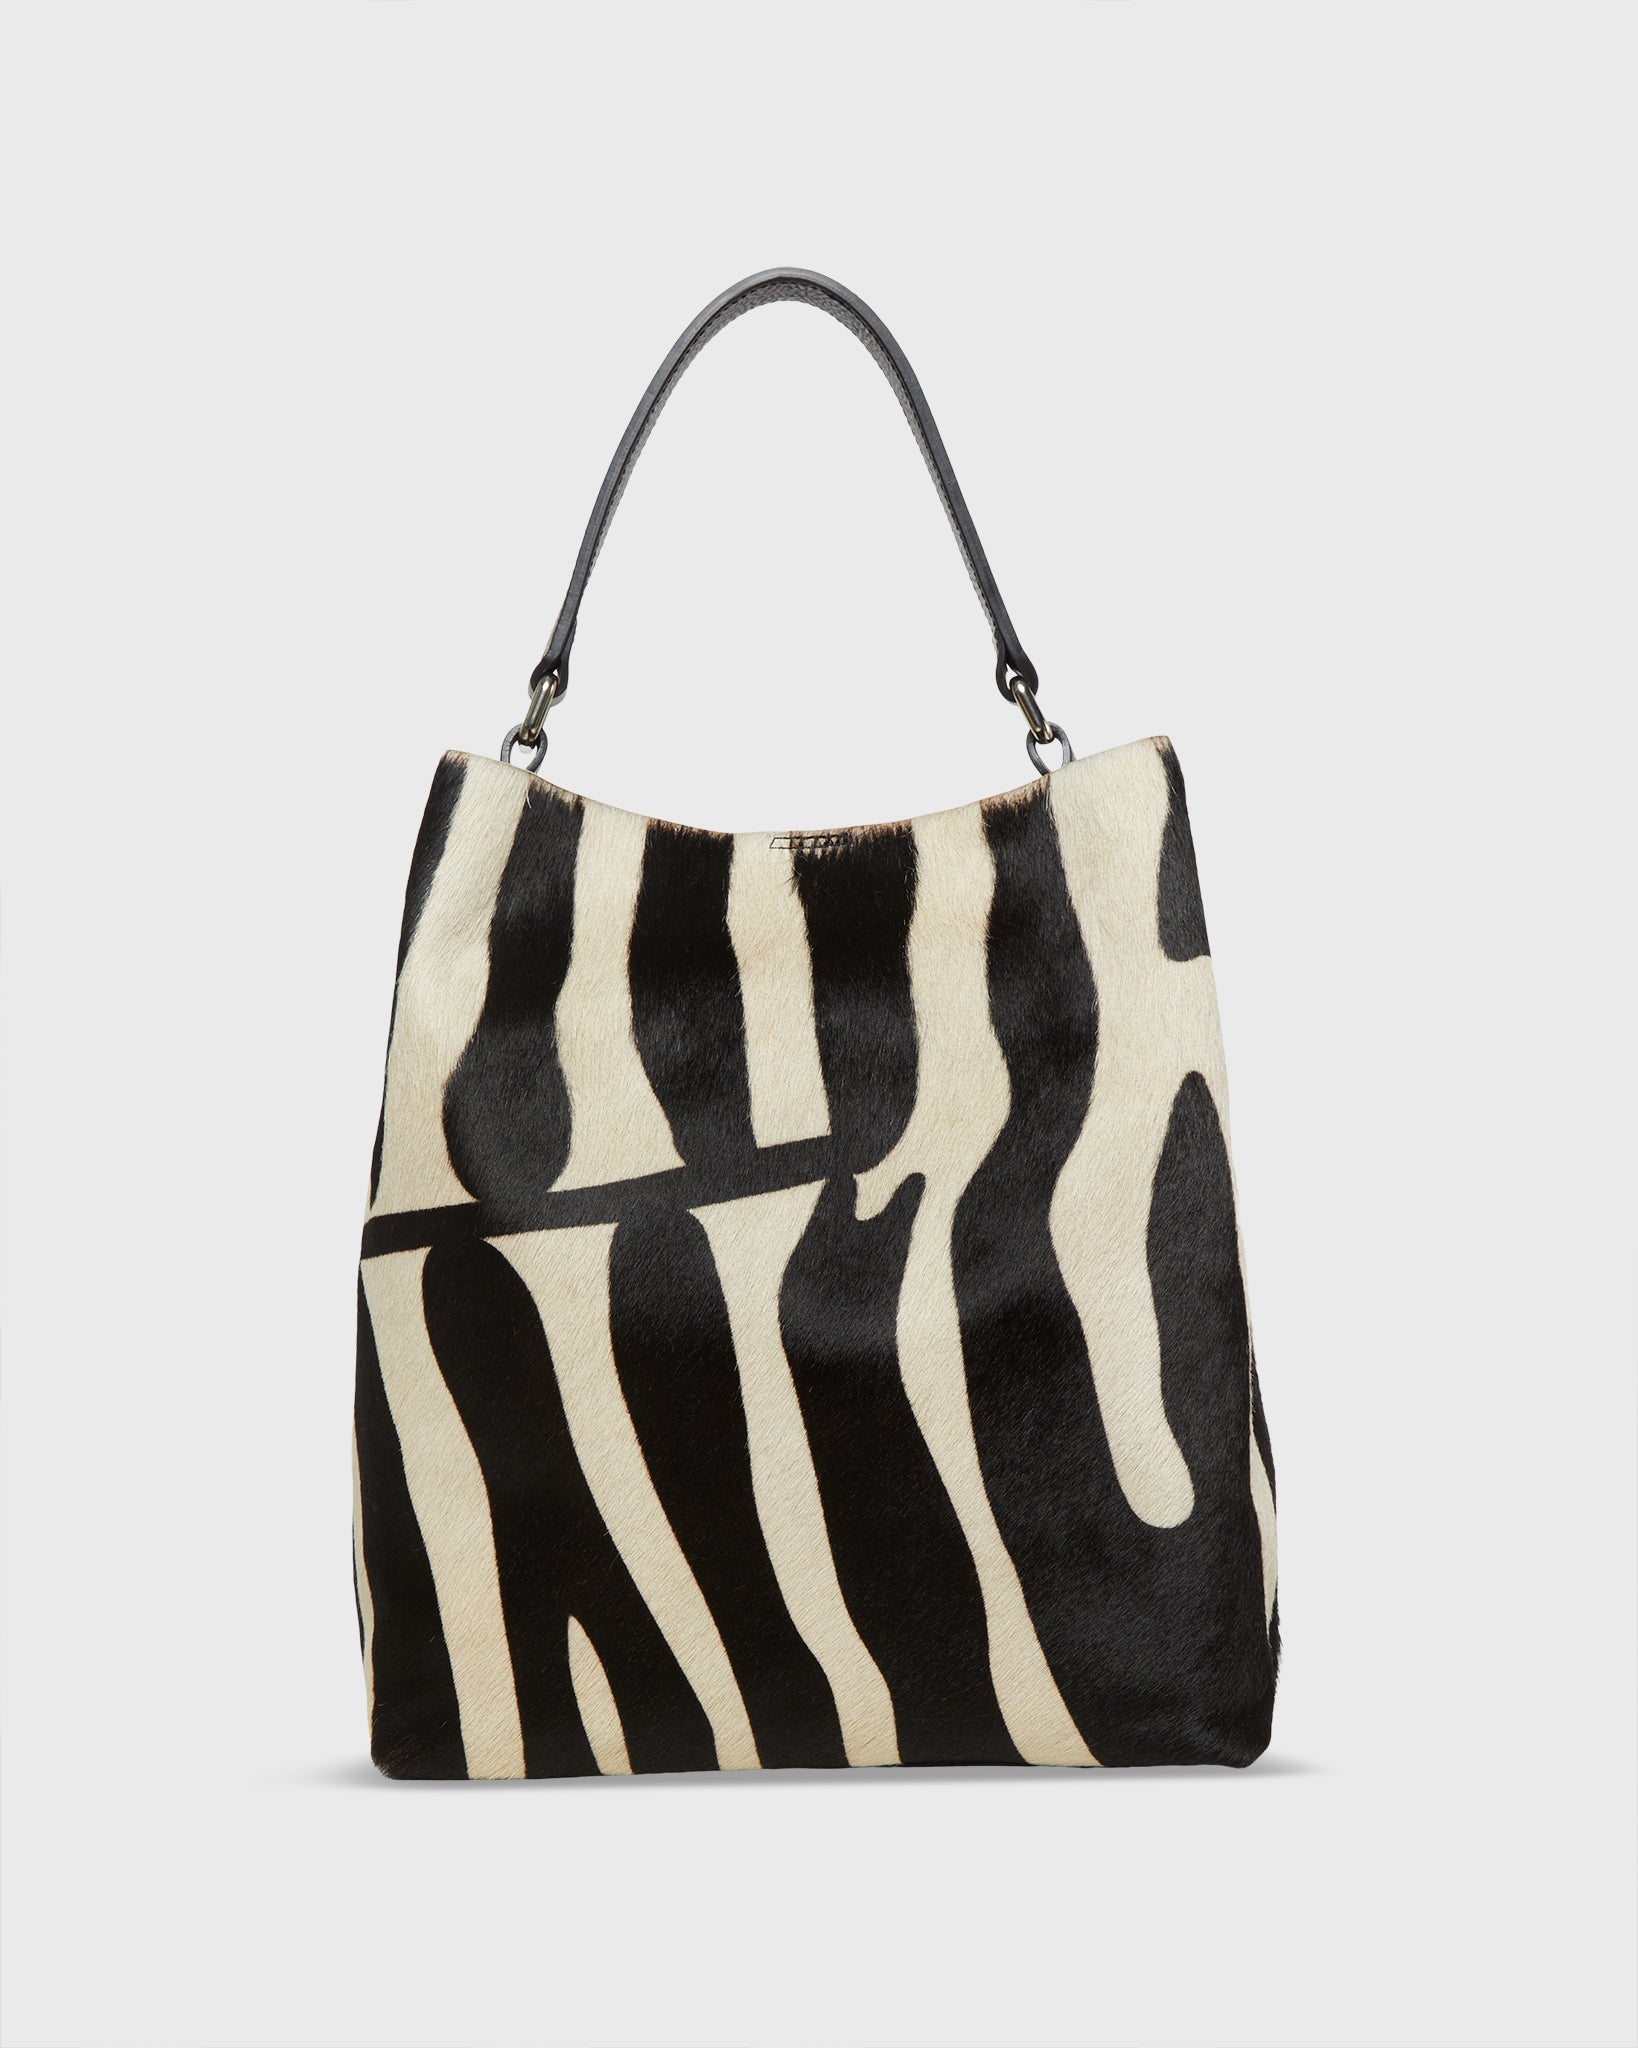 ZEBRA - calf Hair handbag, zebra handbag, zebra tote bag, animal print tote bag, animal print handbag, women's bag, zebra brown-black